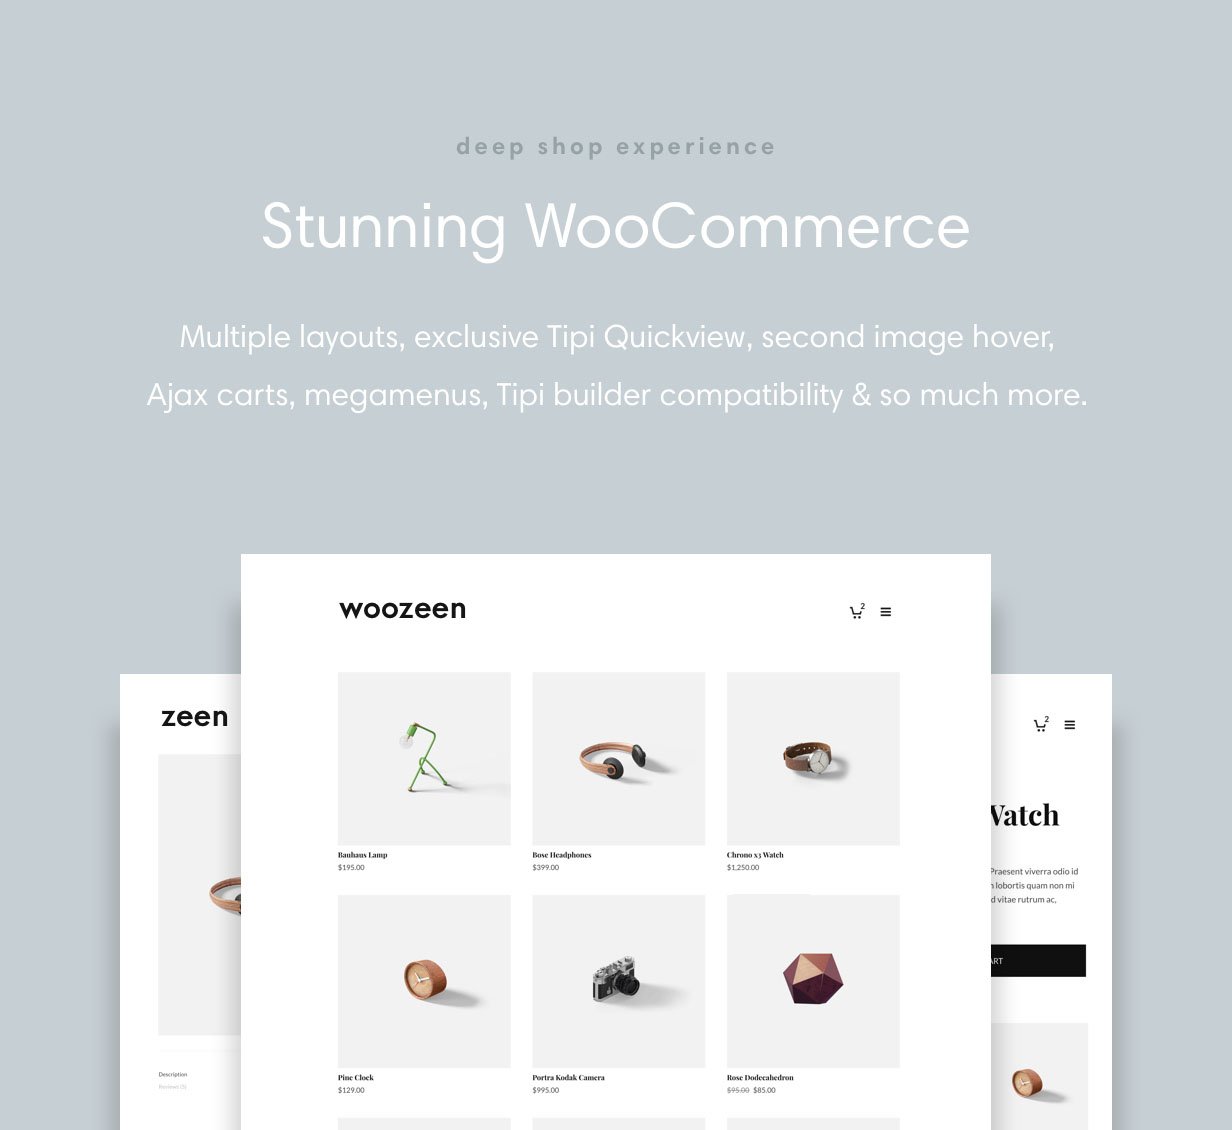 Zeen has deep WooCommerce shop Integration